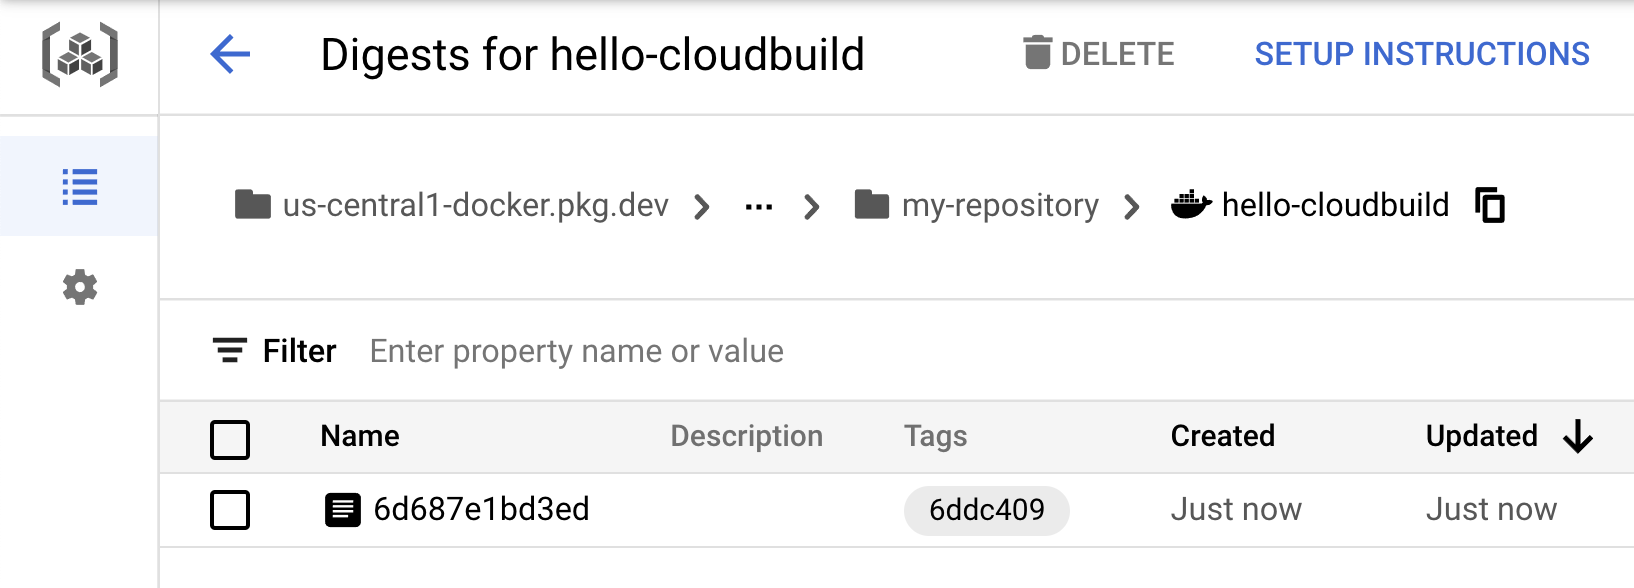 hello-cloudbuild image in Artifact Registry